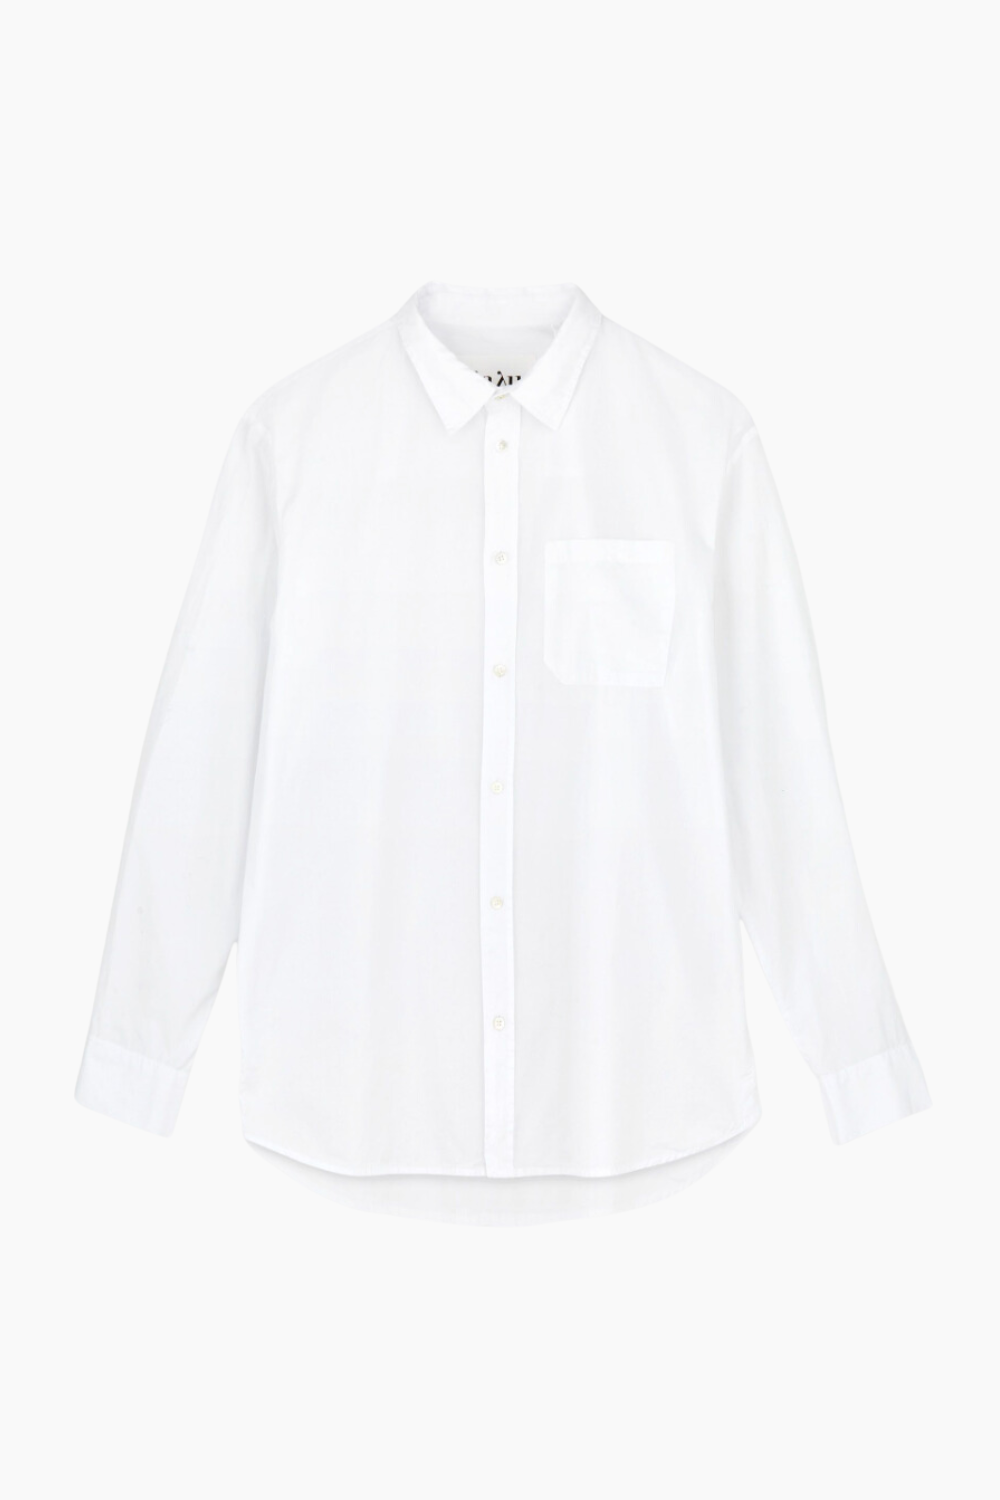 Billede af Classic Shirt - White - Aiayu - Hvid S